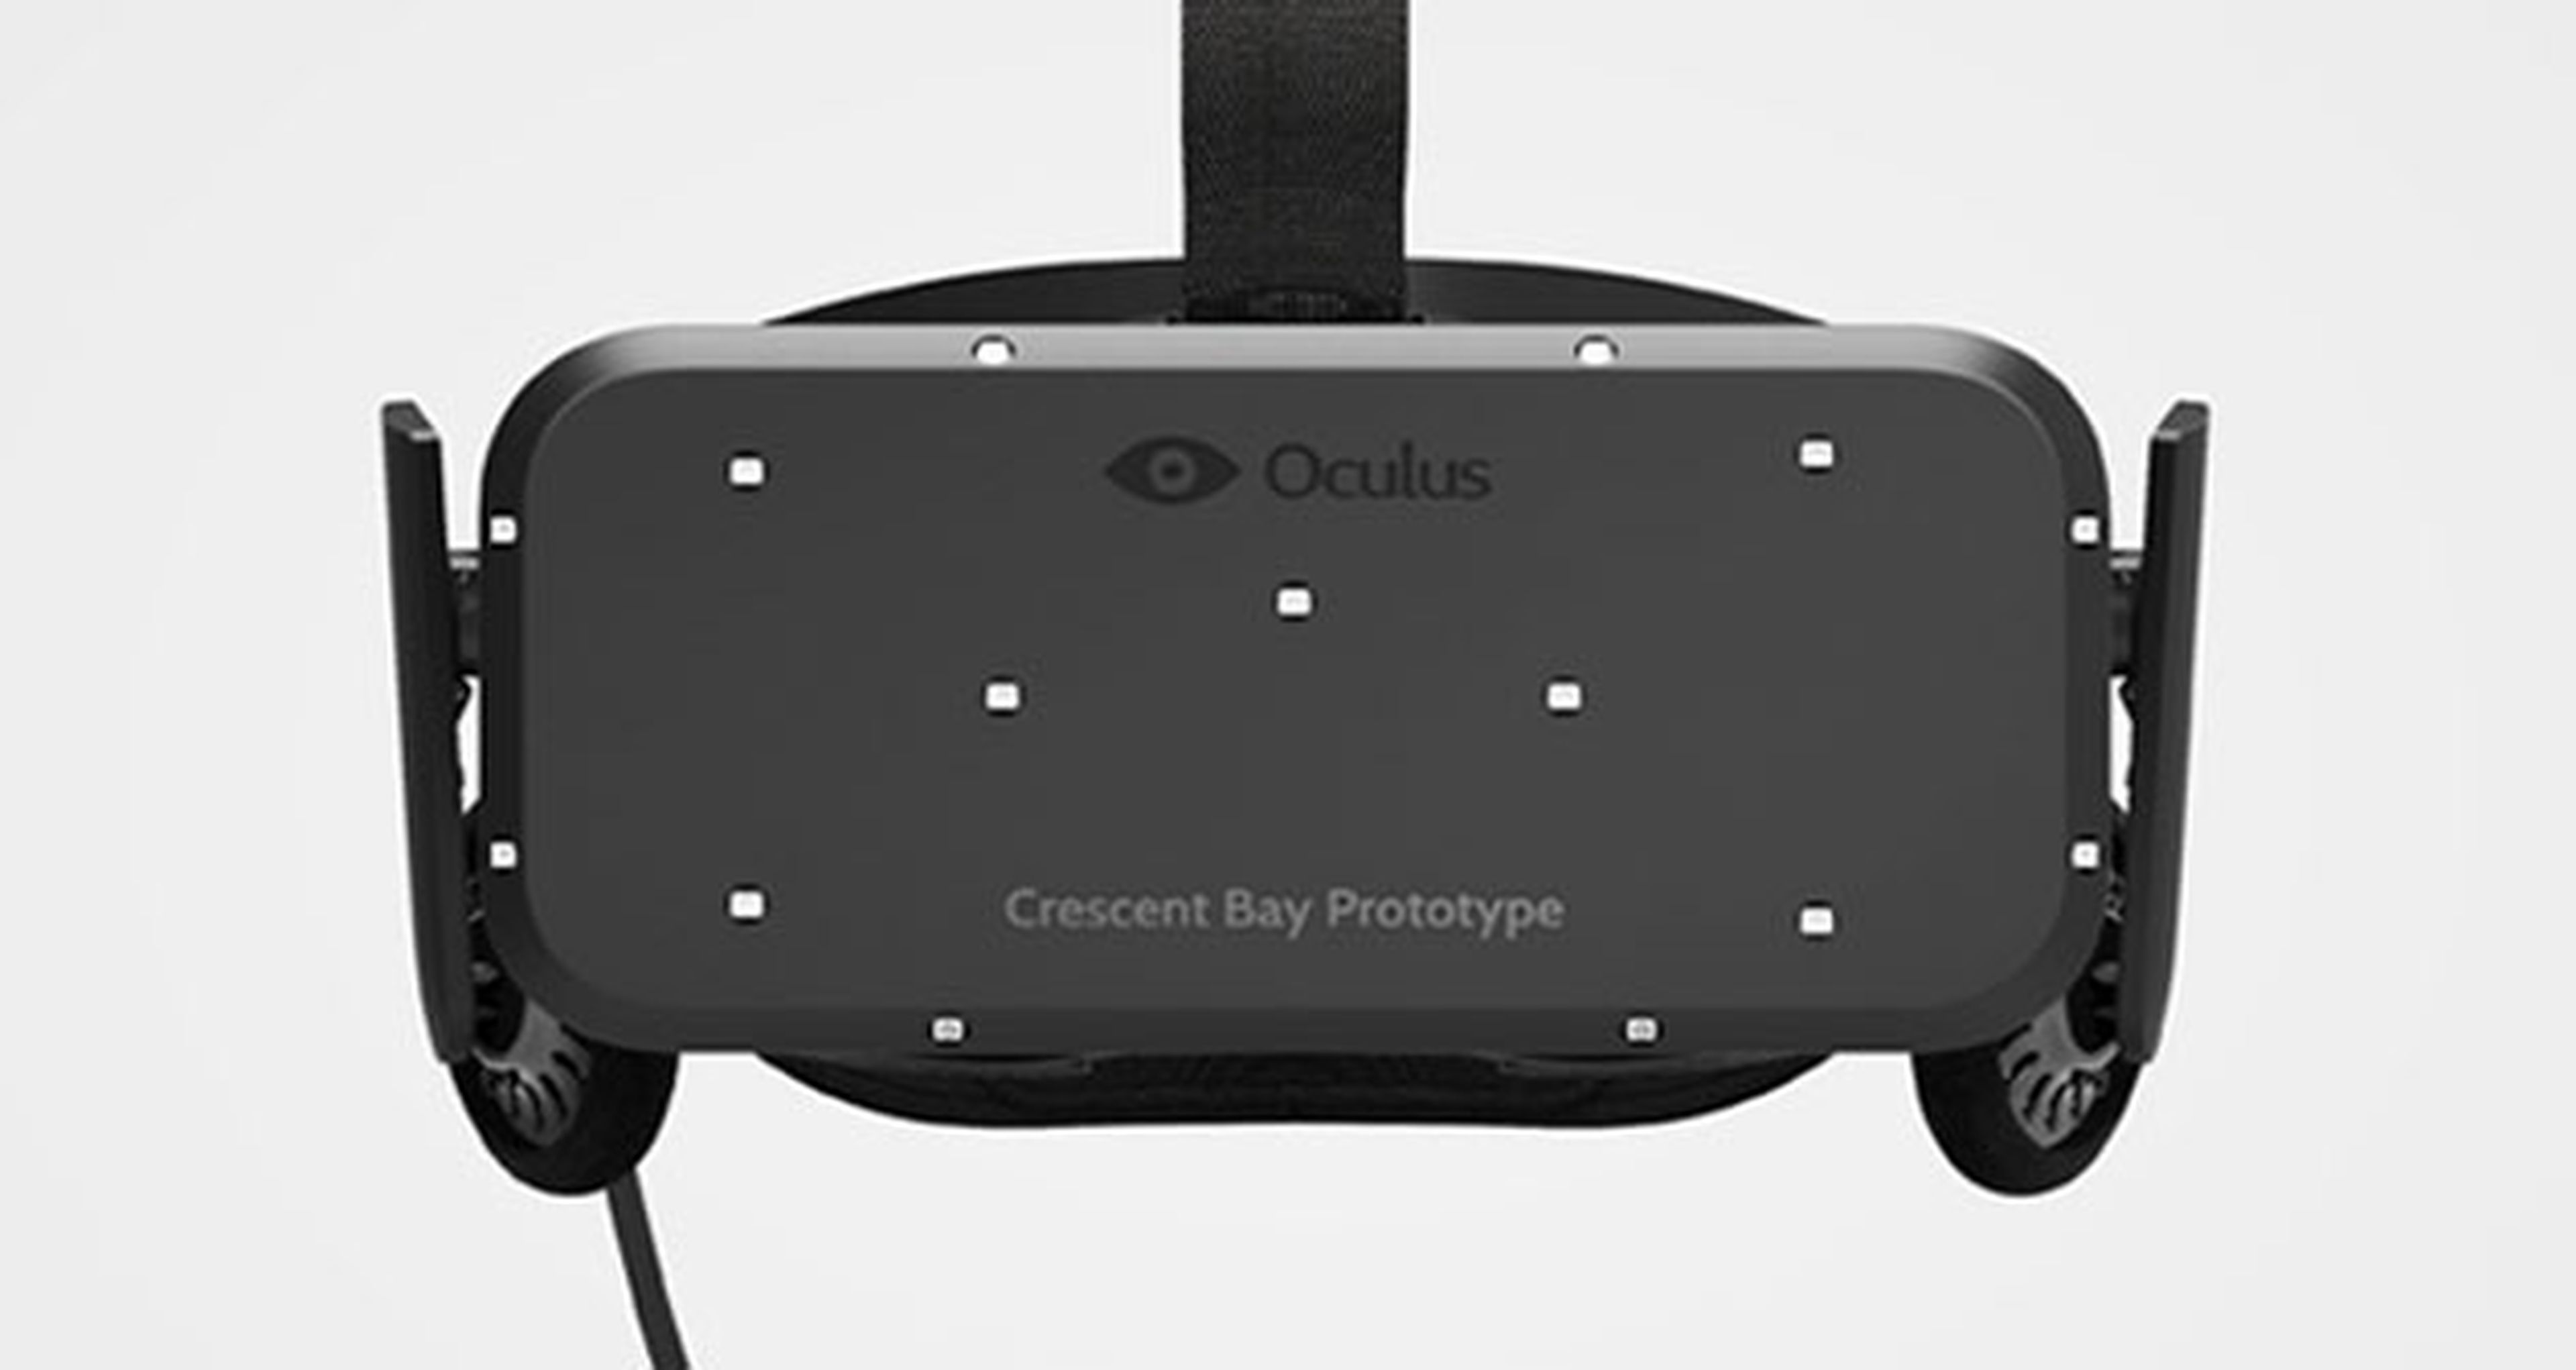 Oculus Rift: Nuevo prototipo Crescent Bay. Integrará micrófono y auriculares